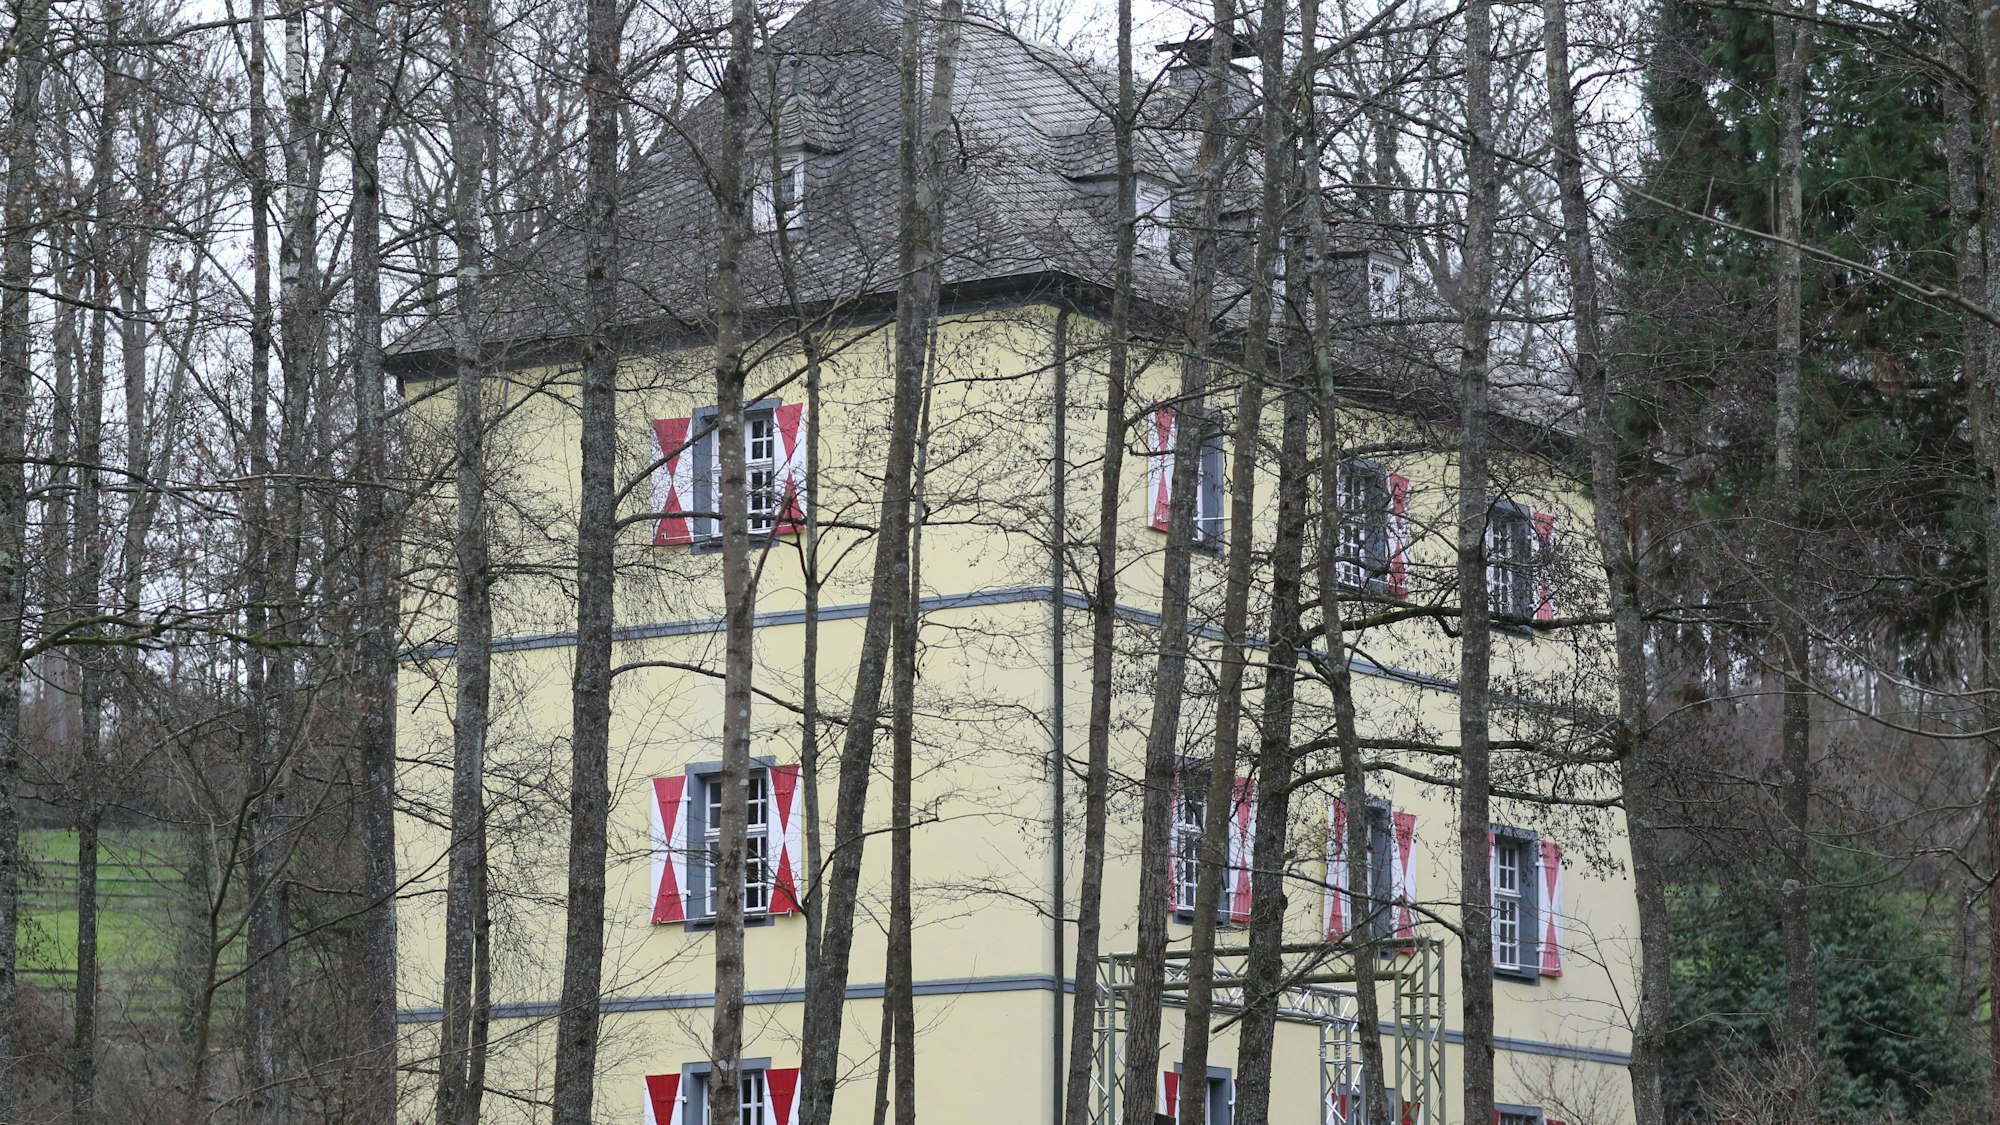 Die Burg Welterode in Eitorf mit gelber Fassade und weiß-roten Fensterläden, umringt von Bäumen.